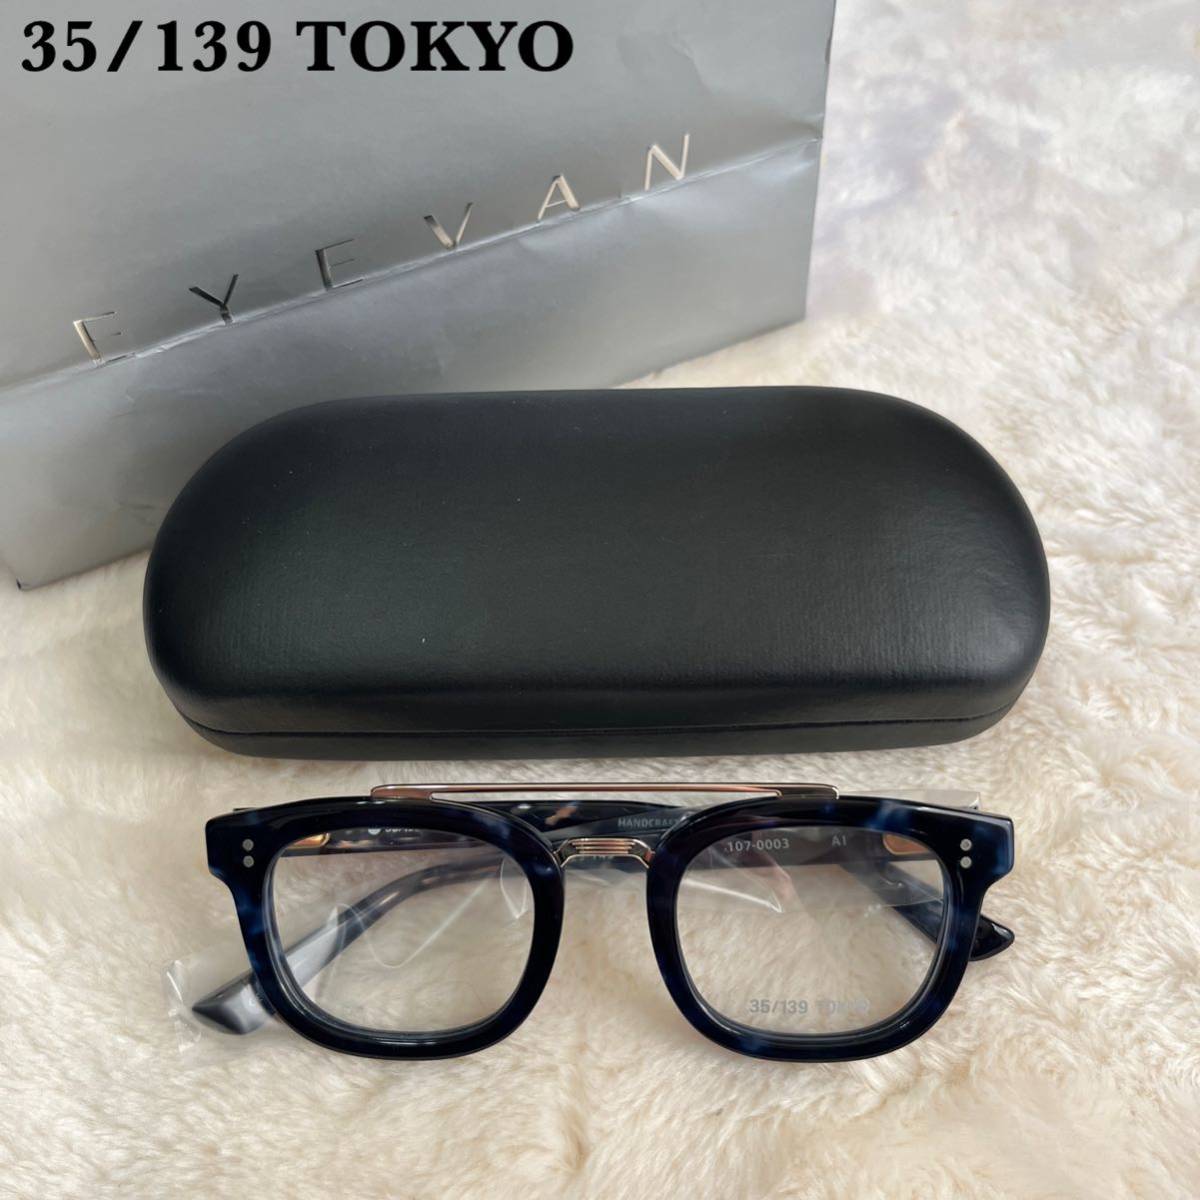 人気アイテム 【新品】定価3.3万 35/139TOKYO 眼鏡 107-0003 AI セル、プラスチックフレーム